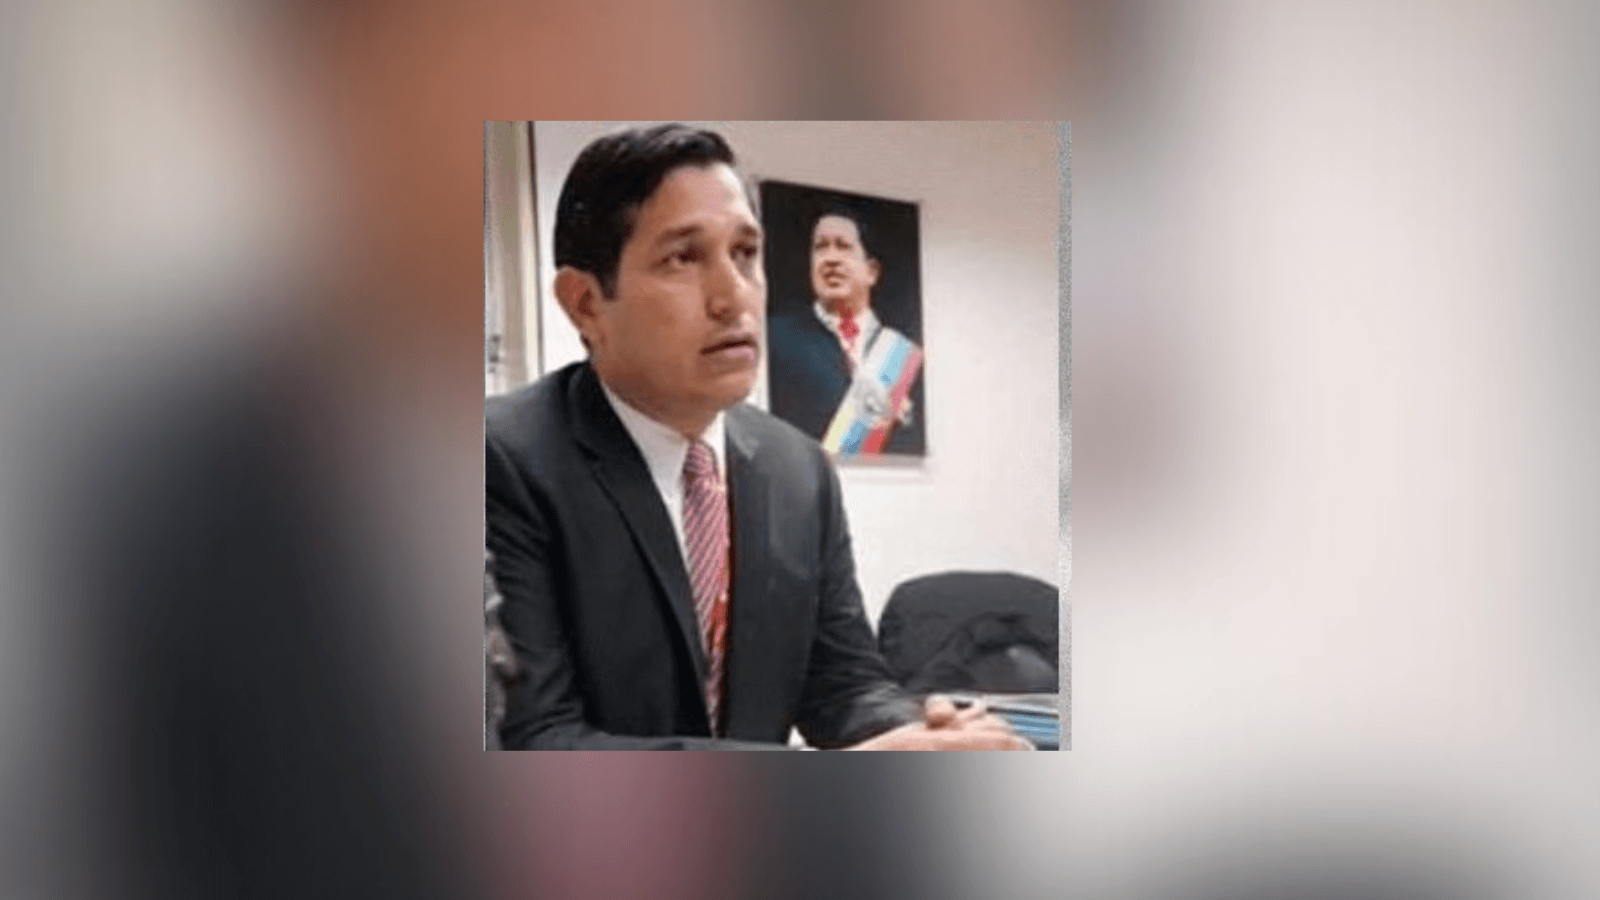 Encuentran muerto en prisión a Marino José Lugo Aguilar, ...n trama de corrupción en Venezuela
conocida como PDVSA-cripto